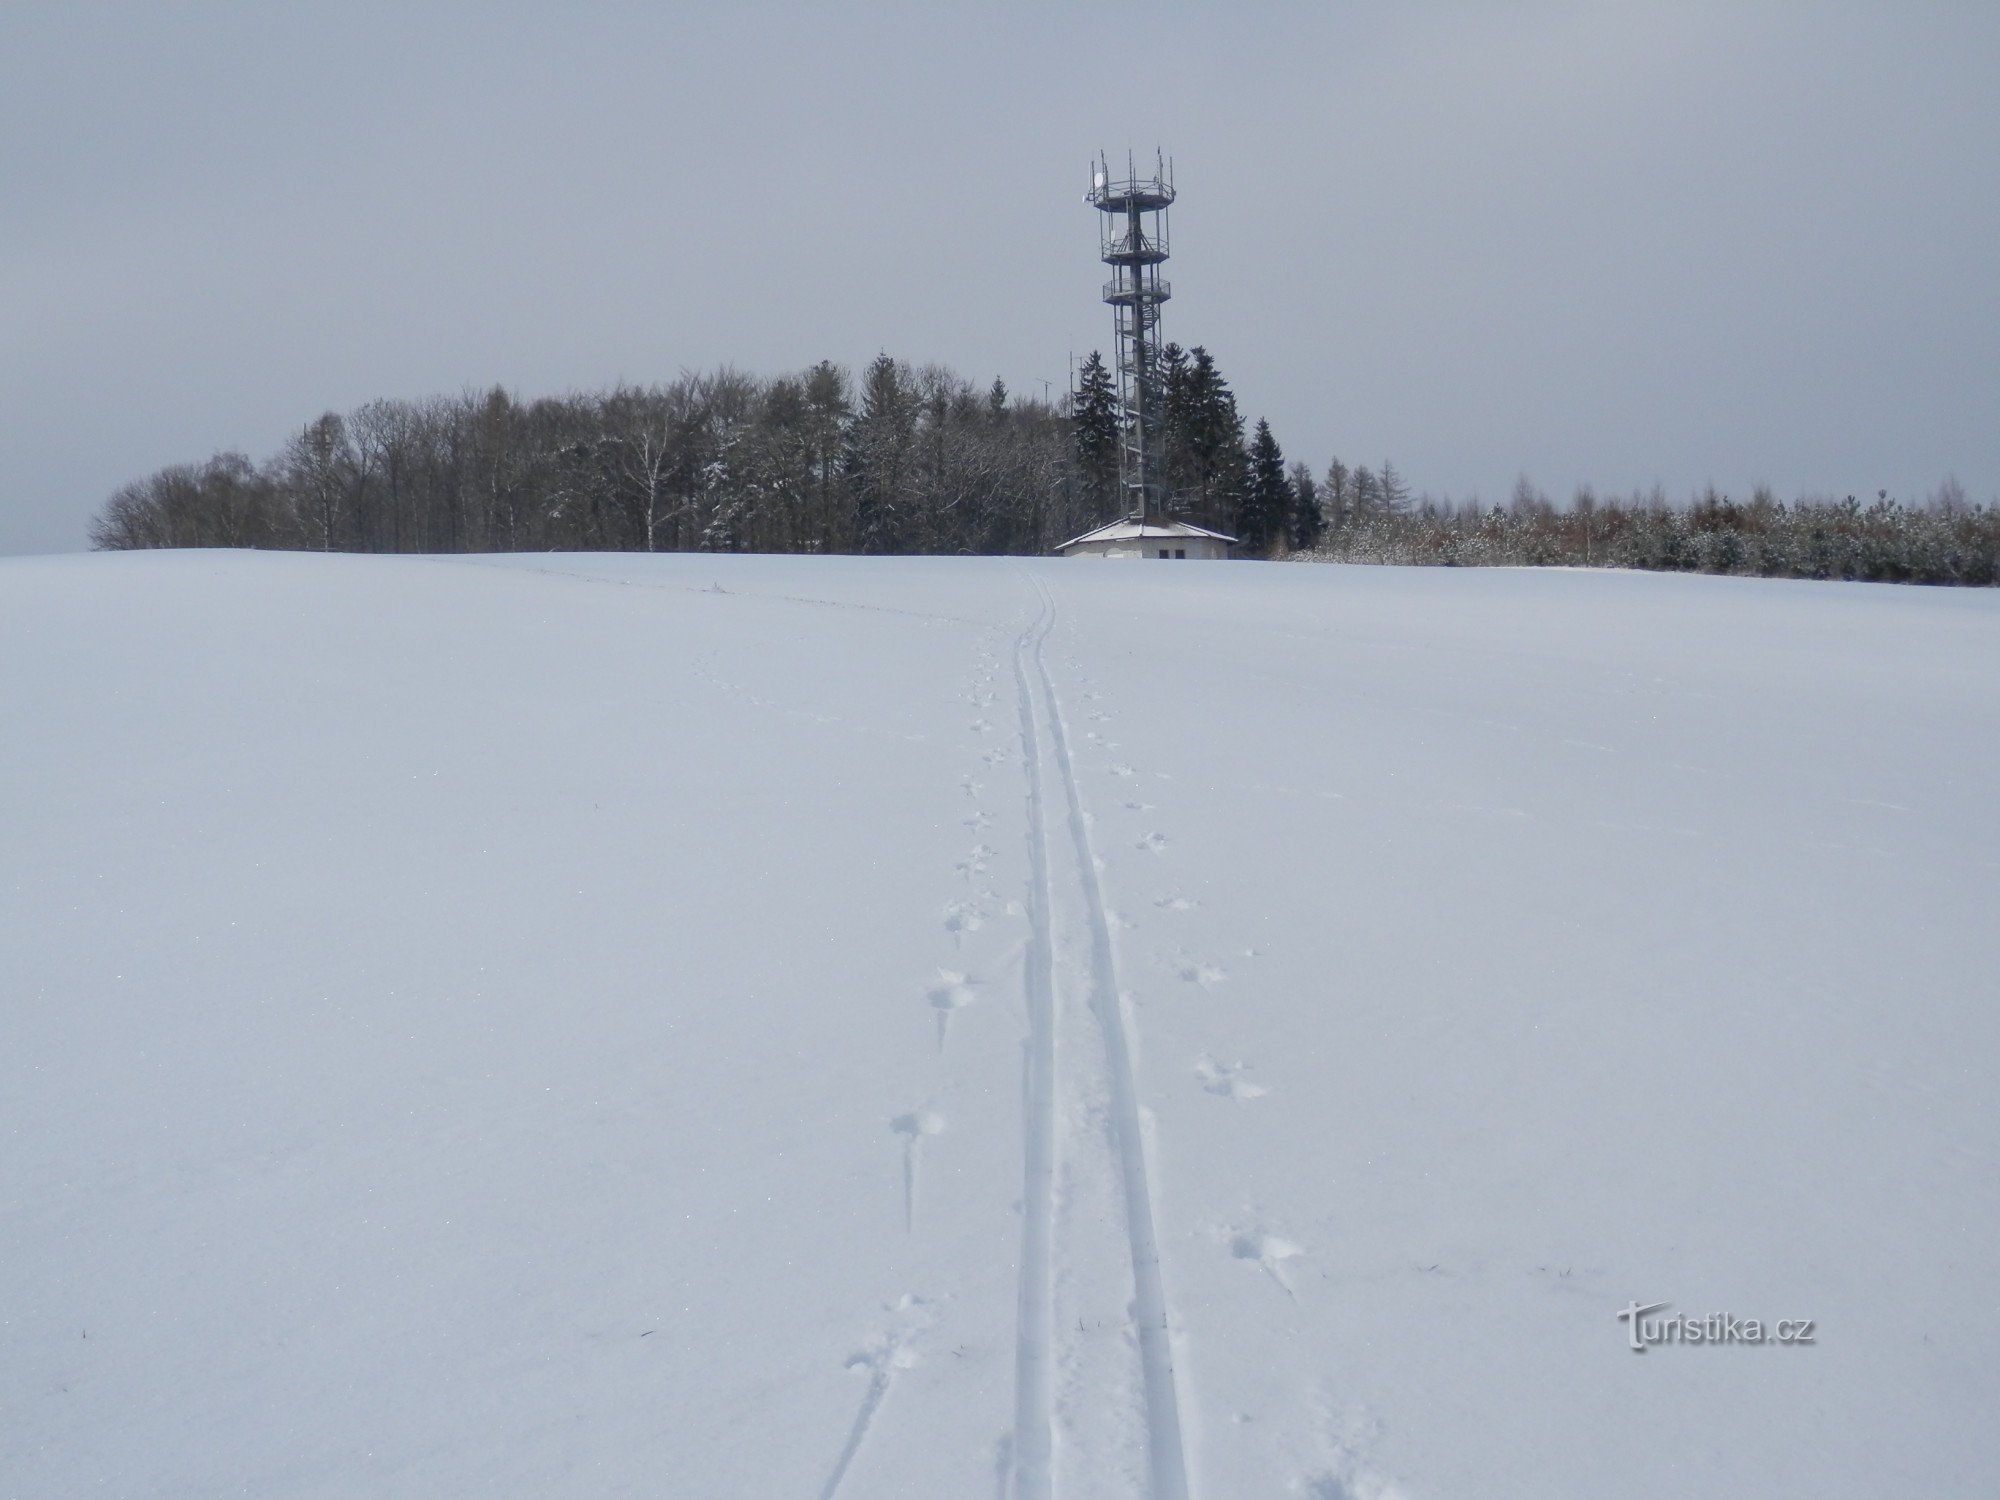 Snöiga Vysoká ringer bara några gånger om året